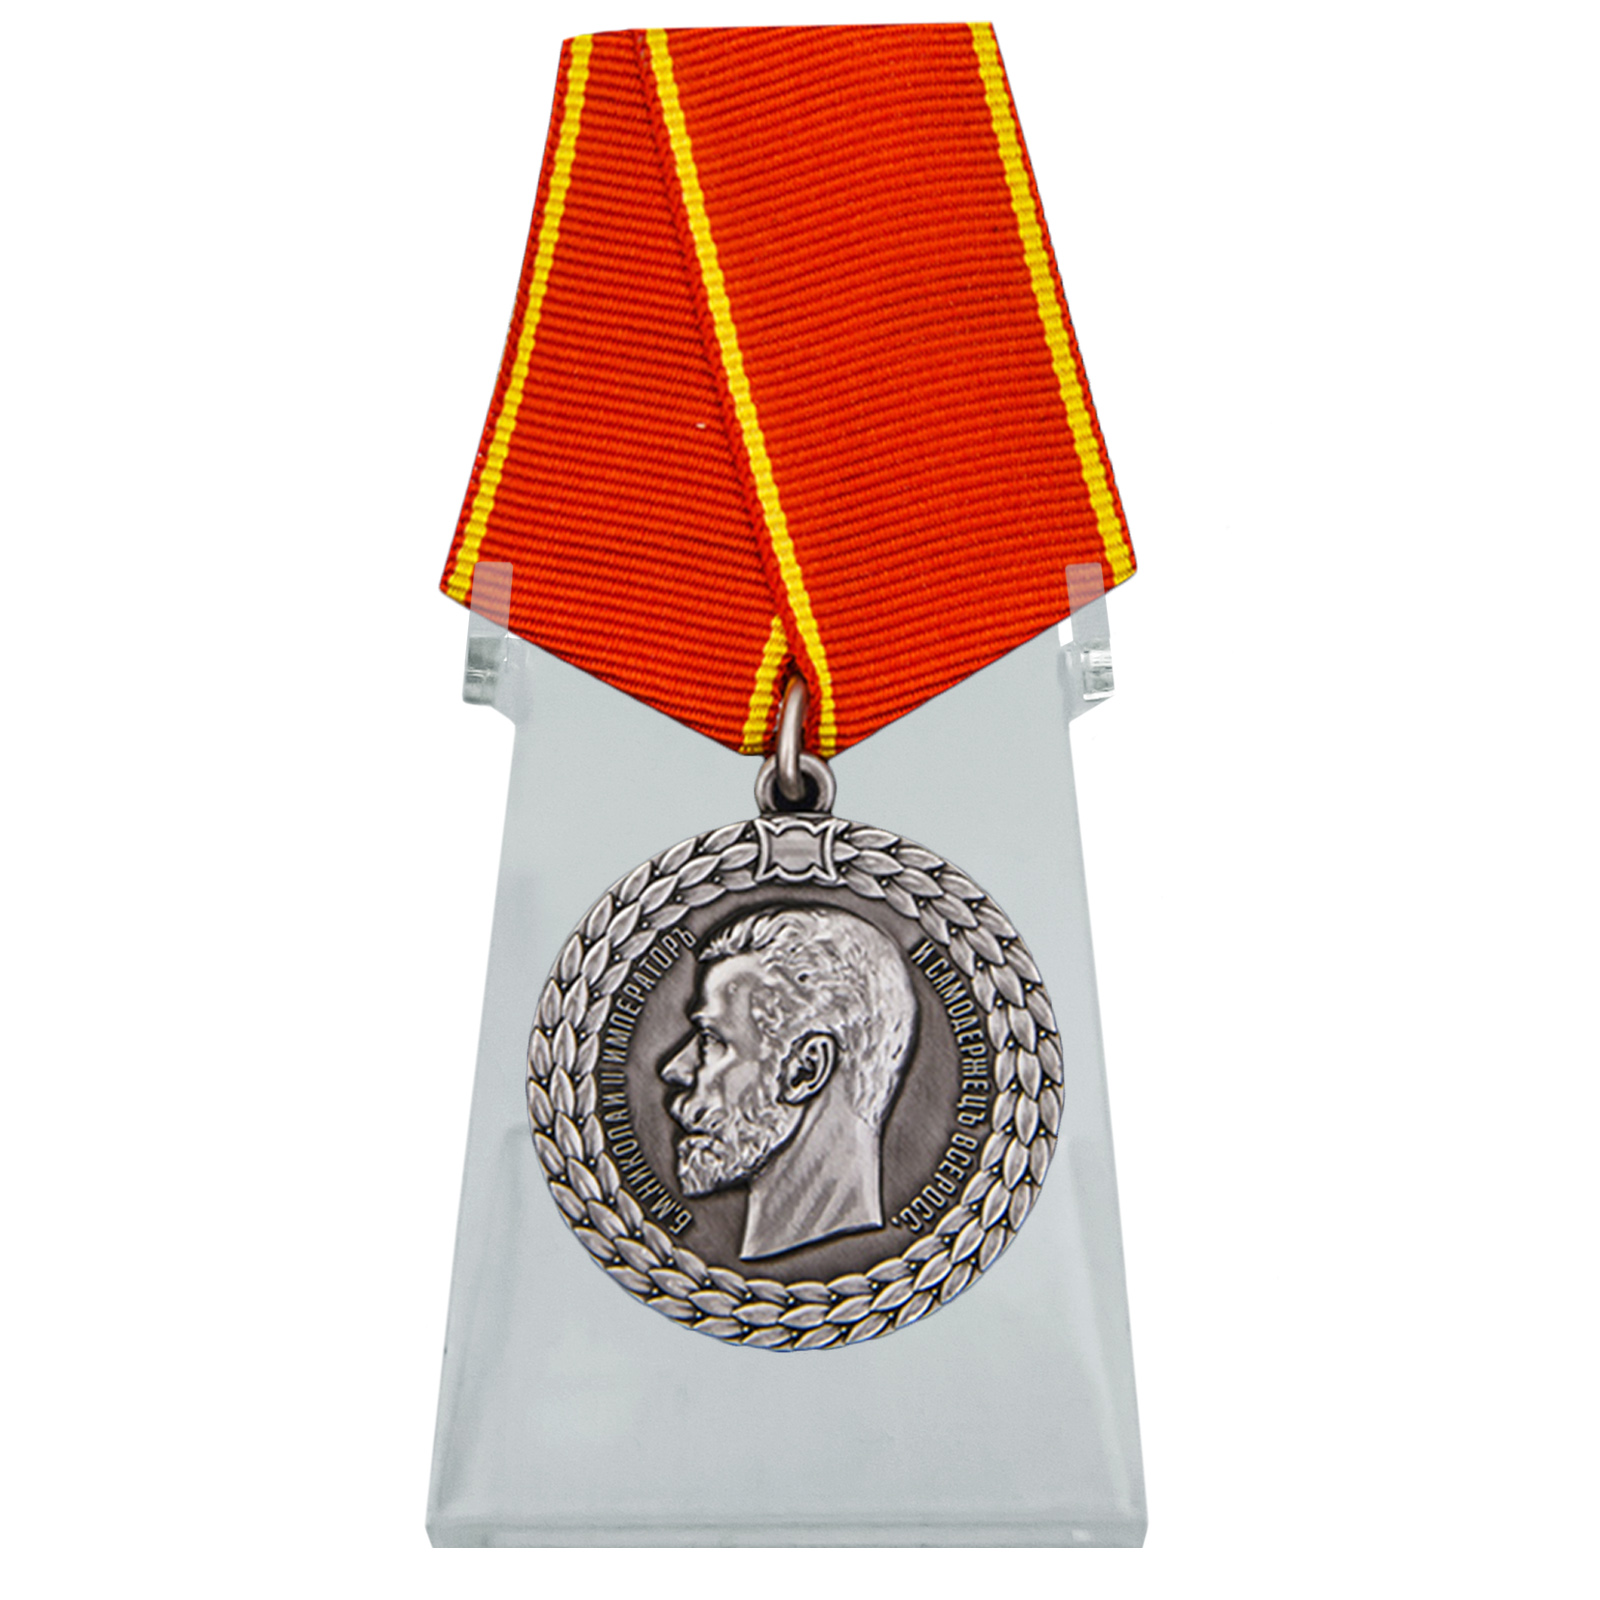 Медаль "За беспорочную службу в полиции" Николай II на подставке